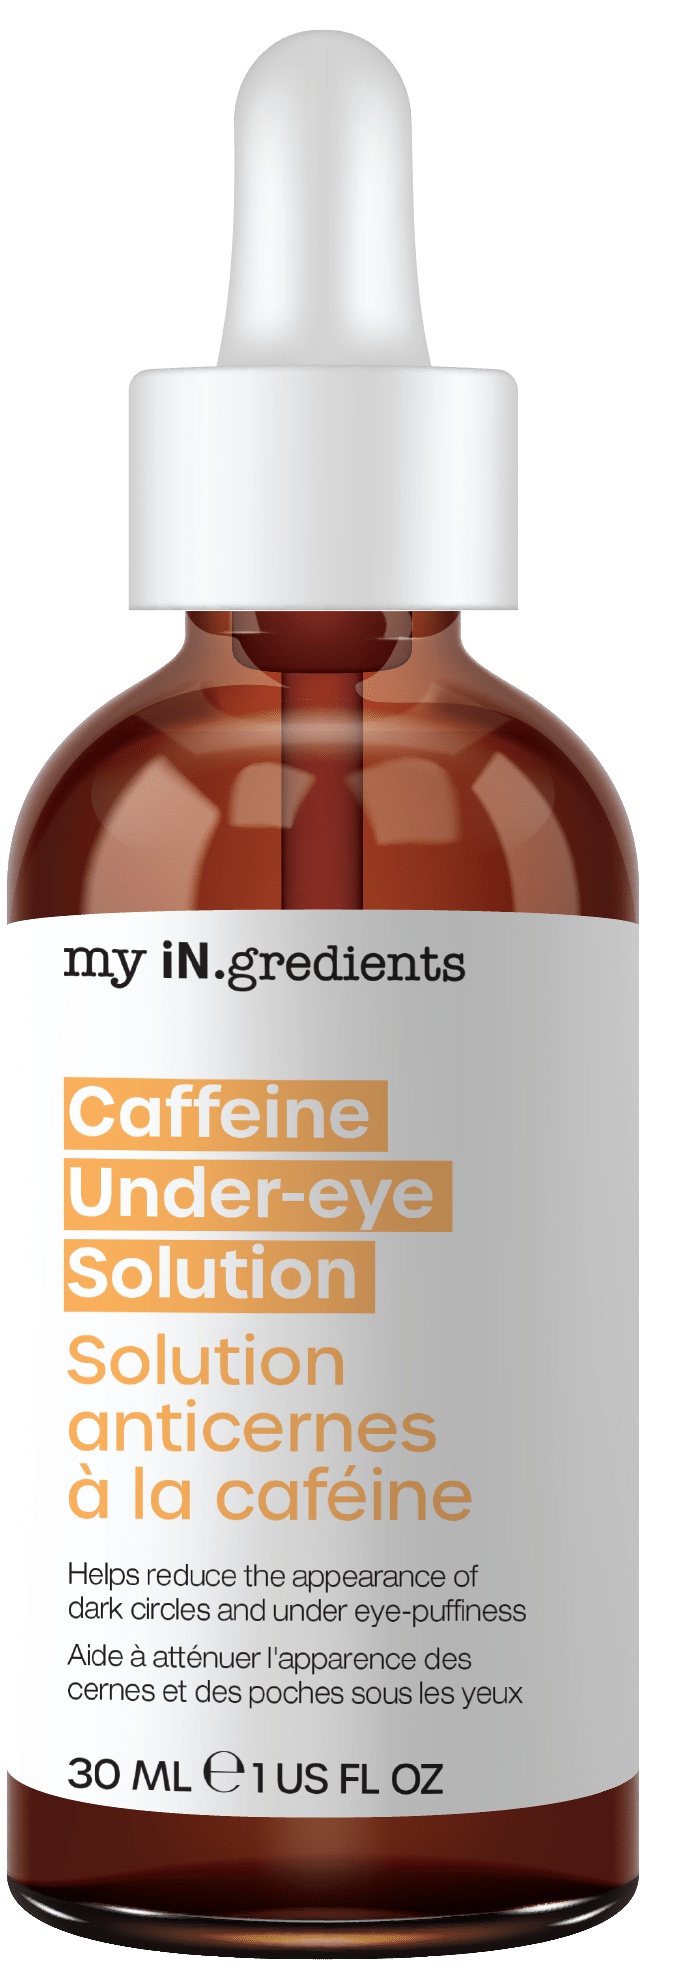 My in. gredients Caffeine Under-eye Solution